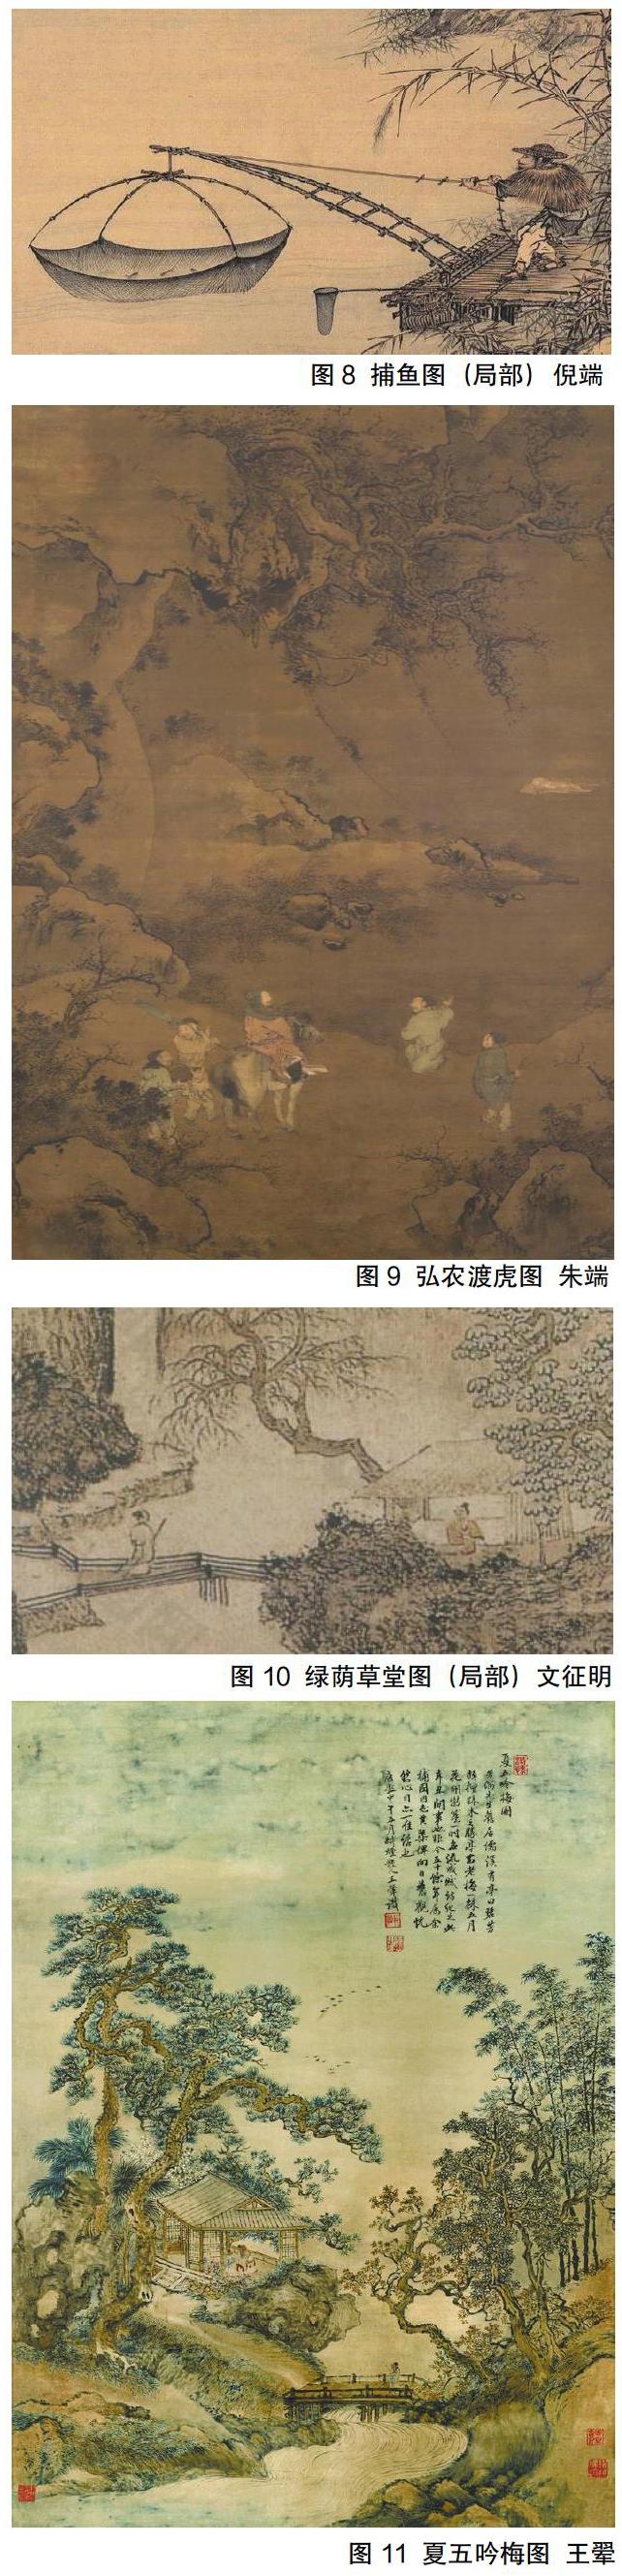 探析中国古代山水画中的人物表现